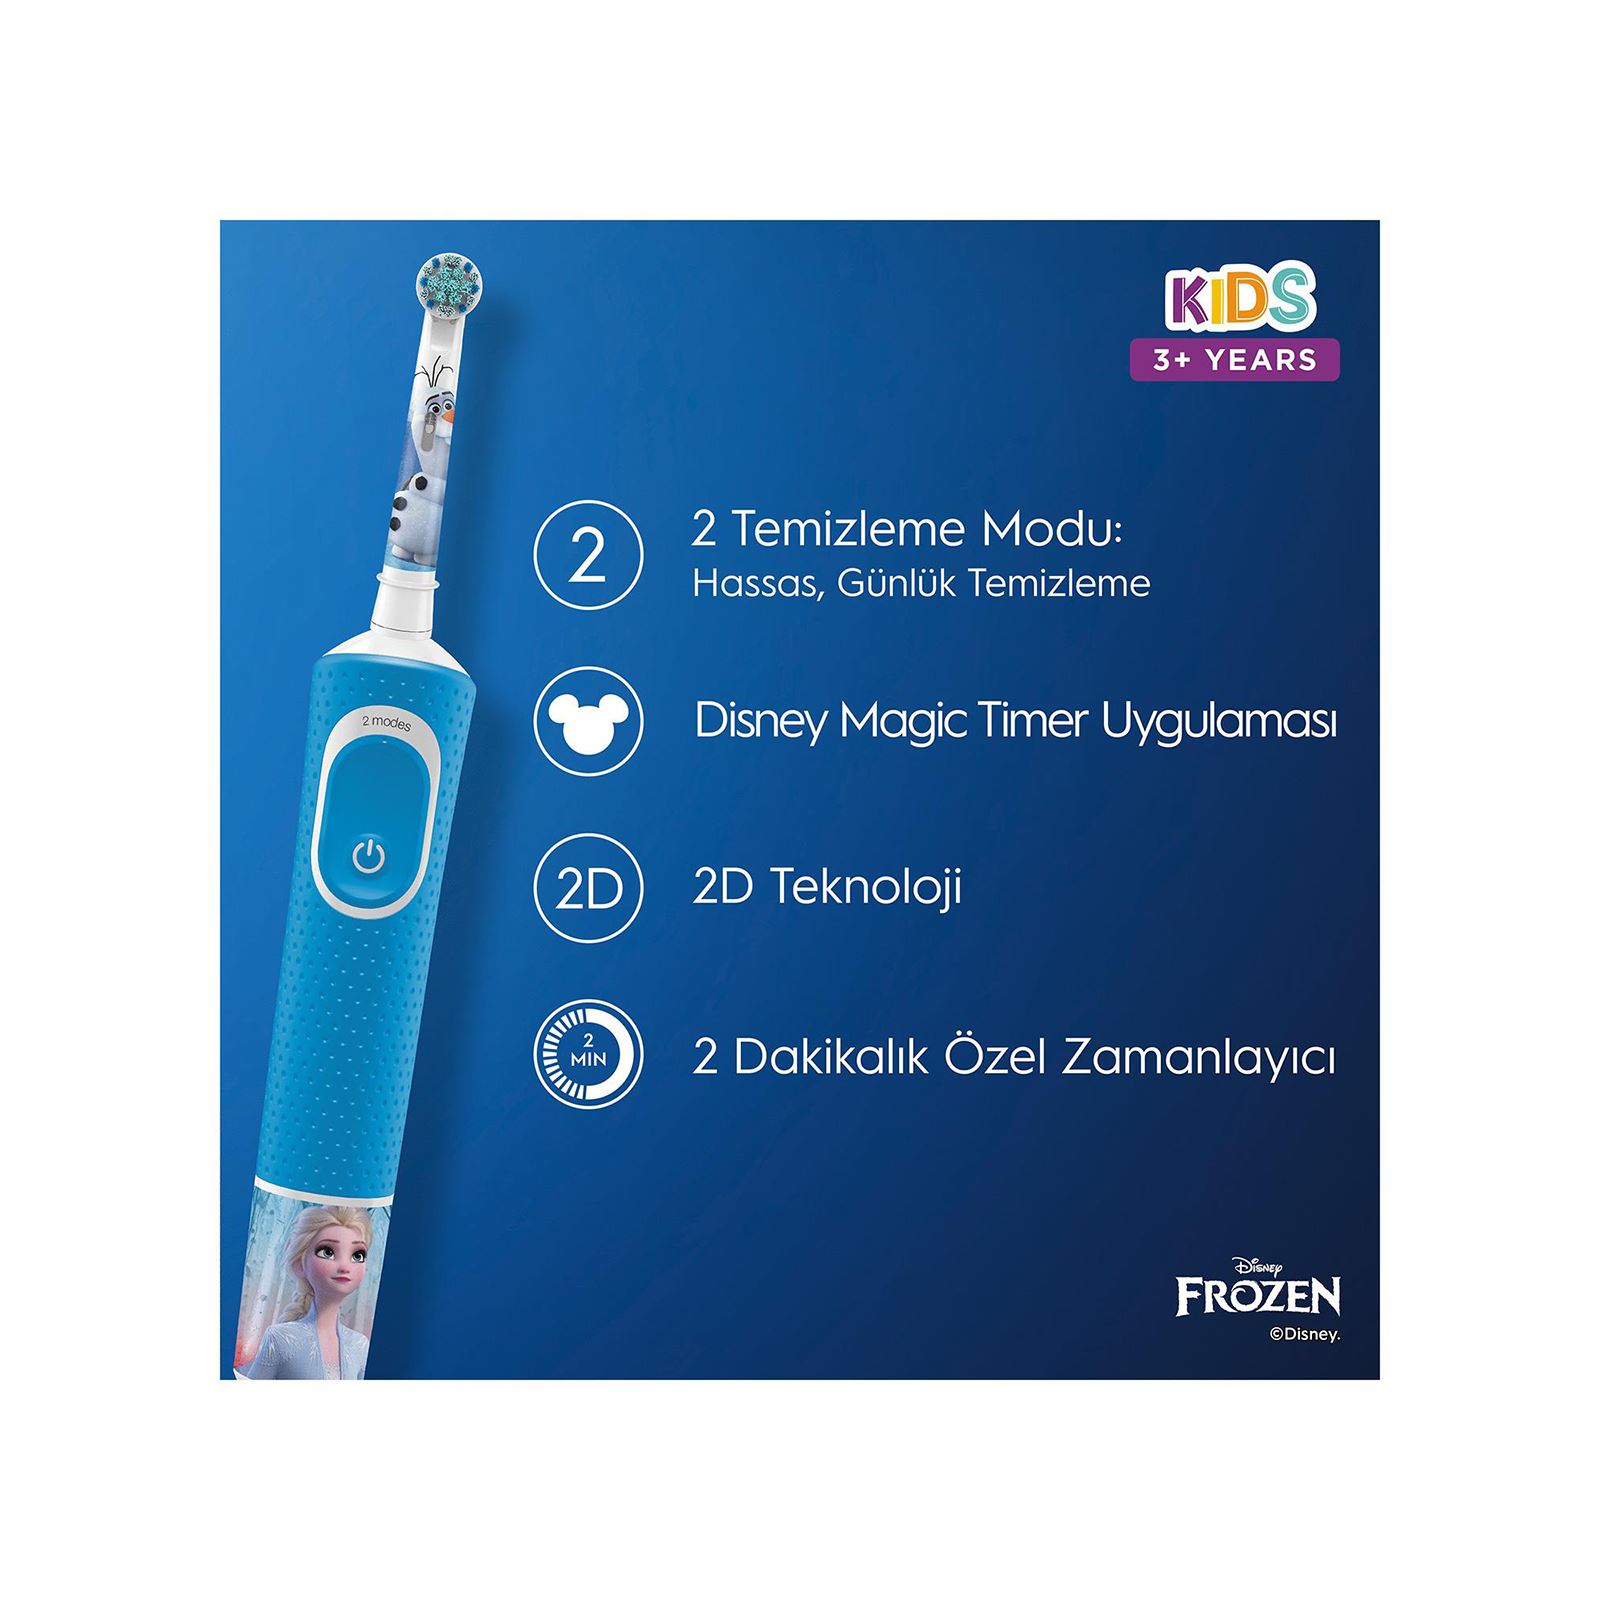 Oral-B D100 Çocuk Şarj Edilebilir Diş Fırçası Frozen